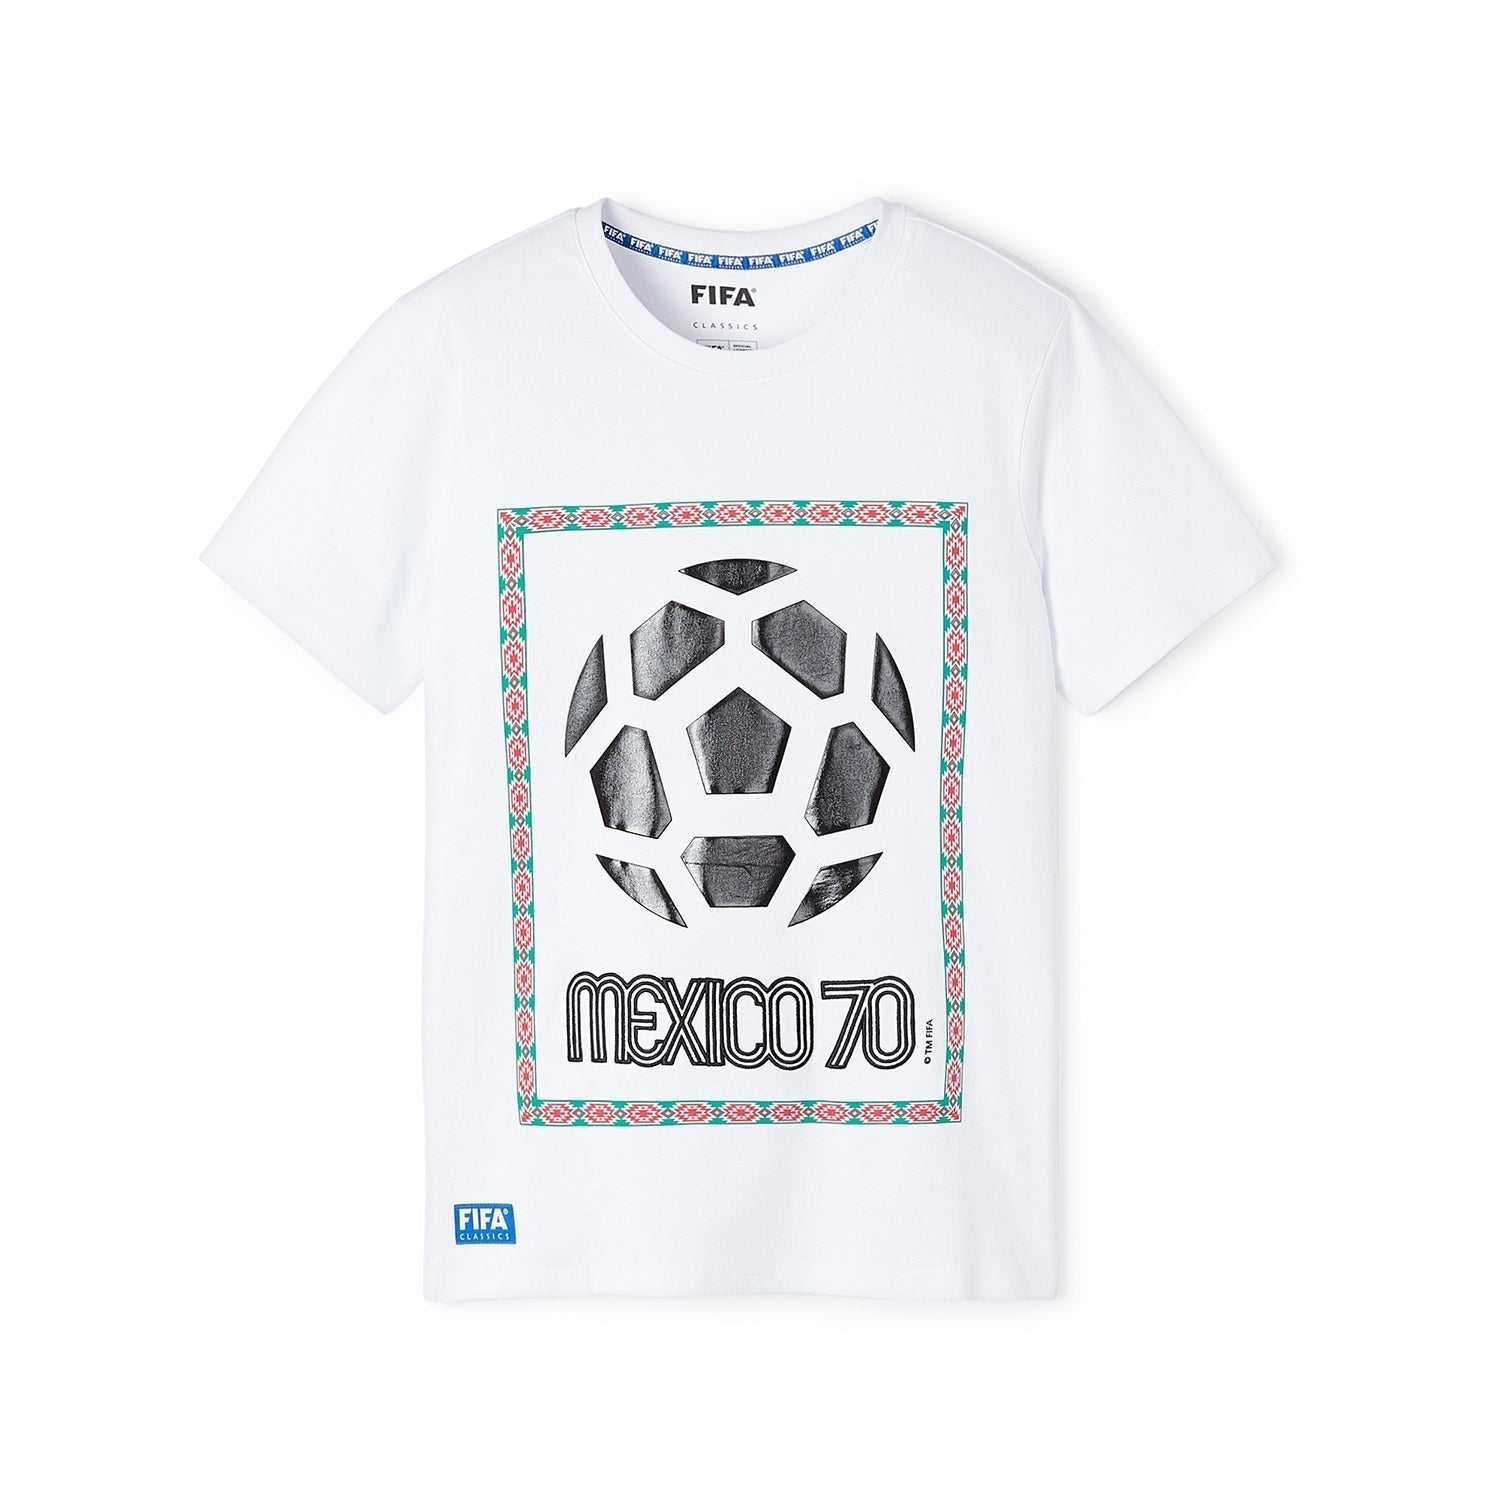 FIFA Rewind Mexico '70 - Emblem Aztec T-Shirt